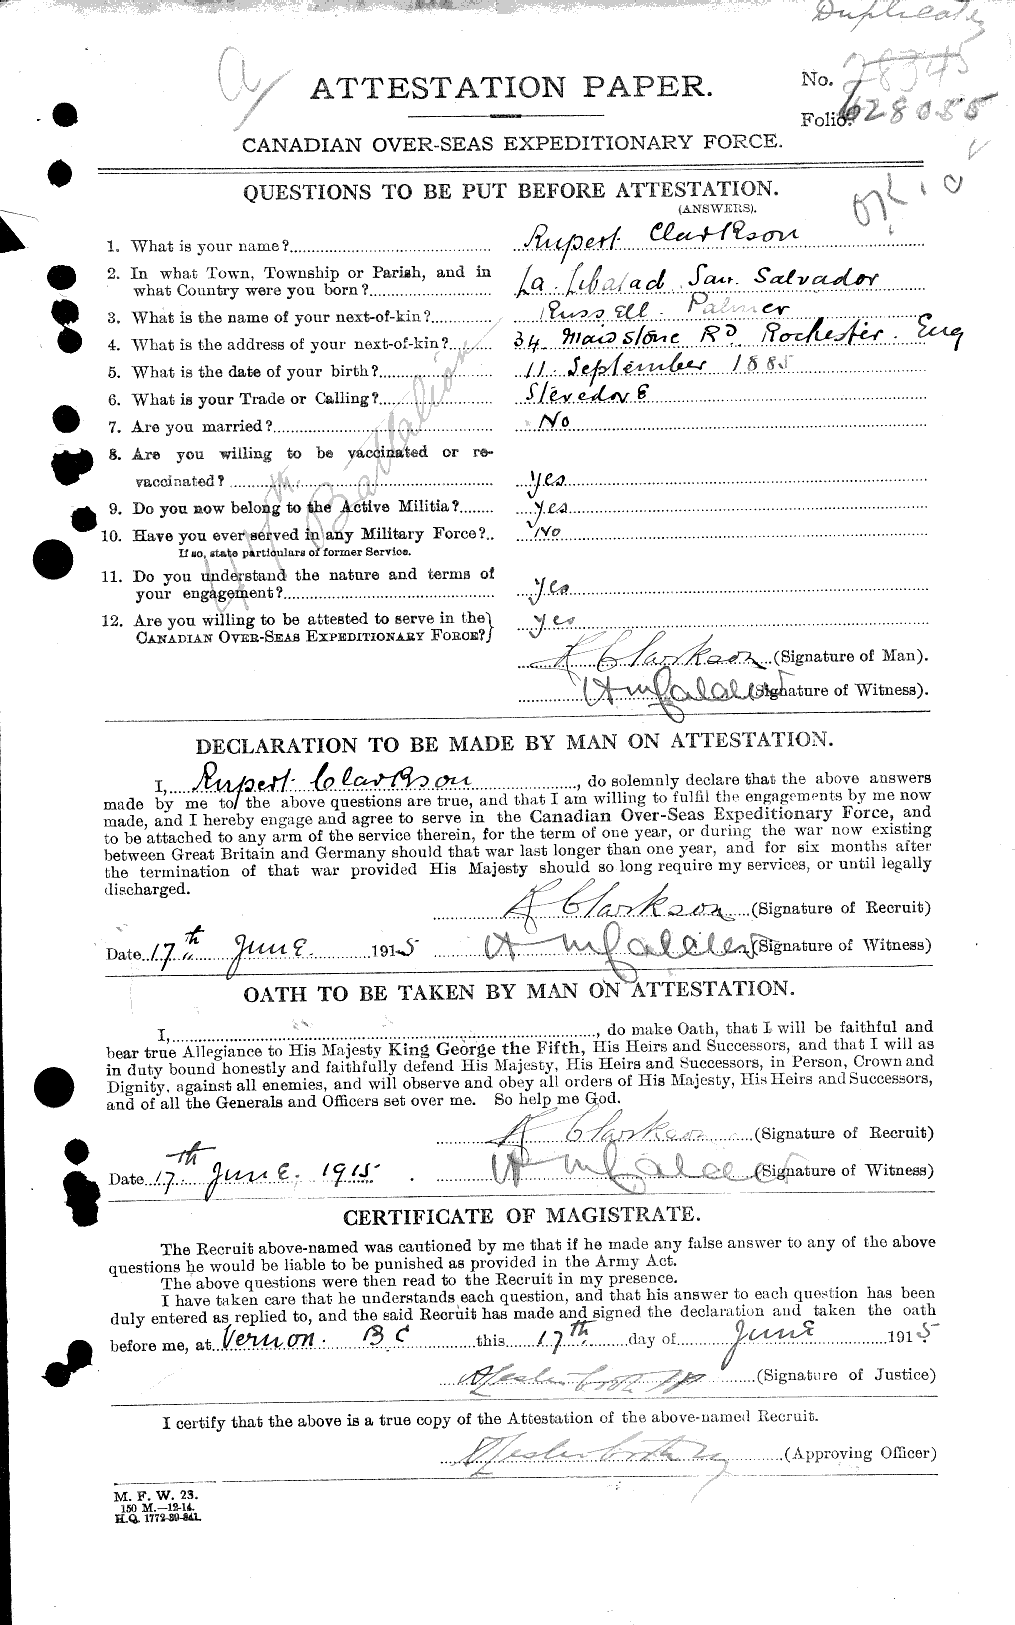 Dossiers du Personnel de la Première Guerre mondiale - CEC 019007a